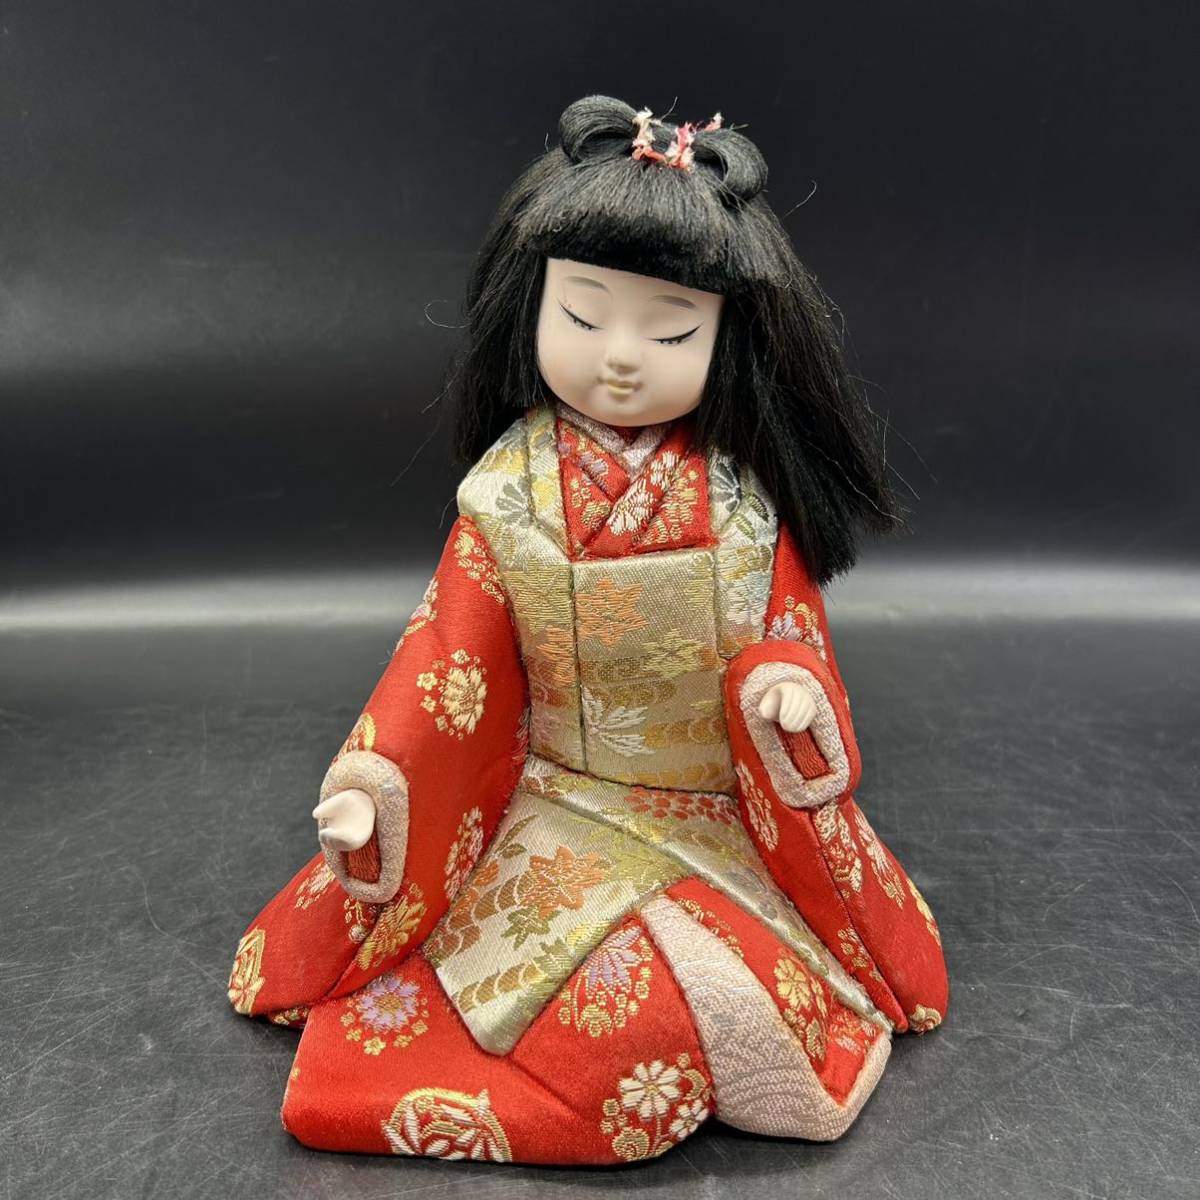 雏人偶, 市松娃娃, 女孩, 日本娃娃, 古董, 装饰品, 室内装饰, H5-2, 玩具娃娃, 人物玩偶, 日本娃娃, 格纹娃娃